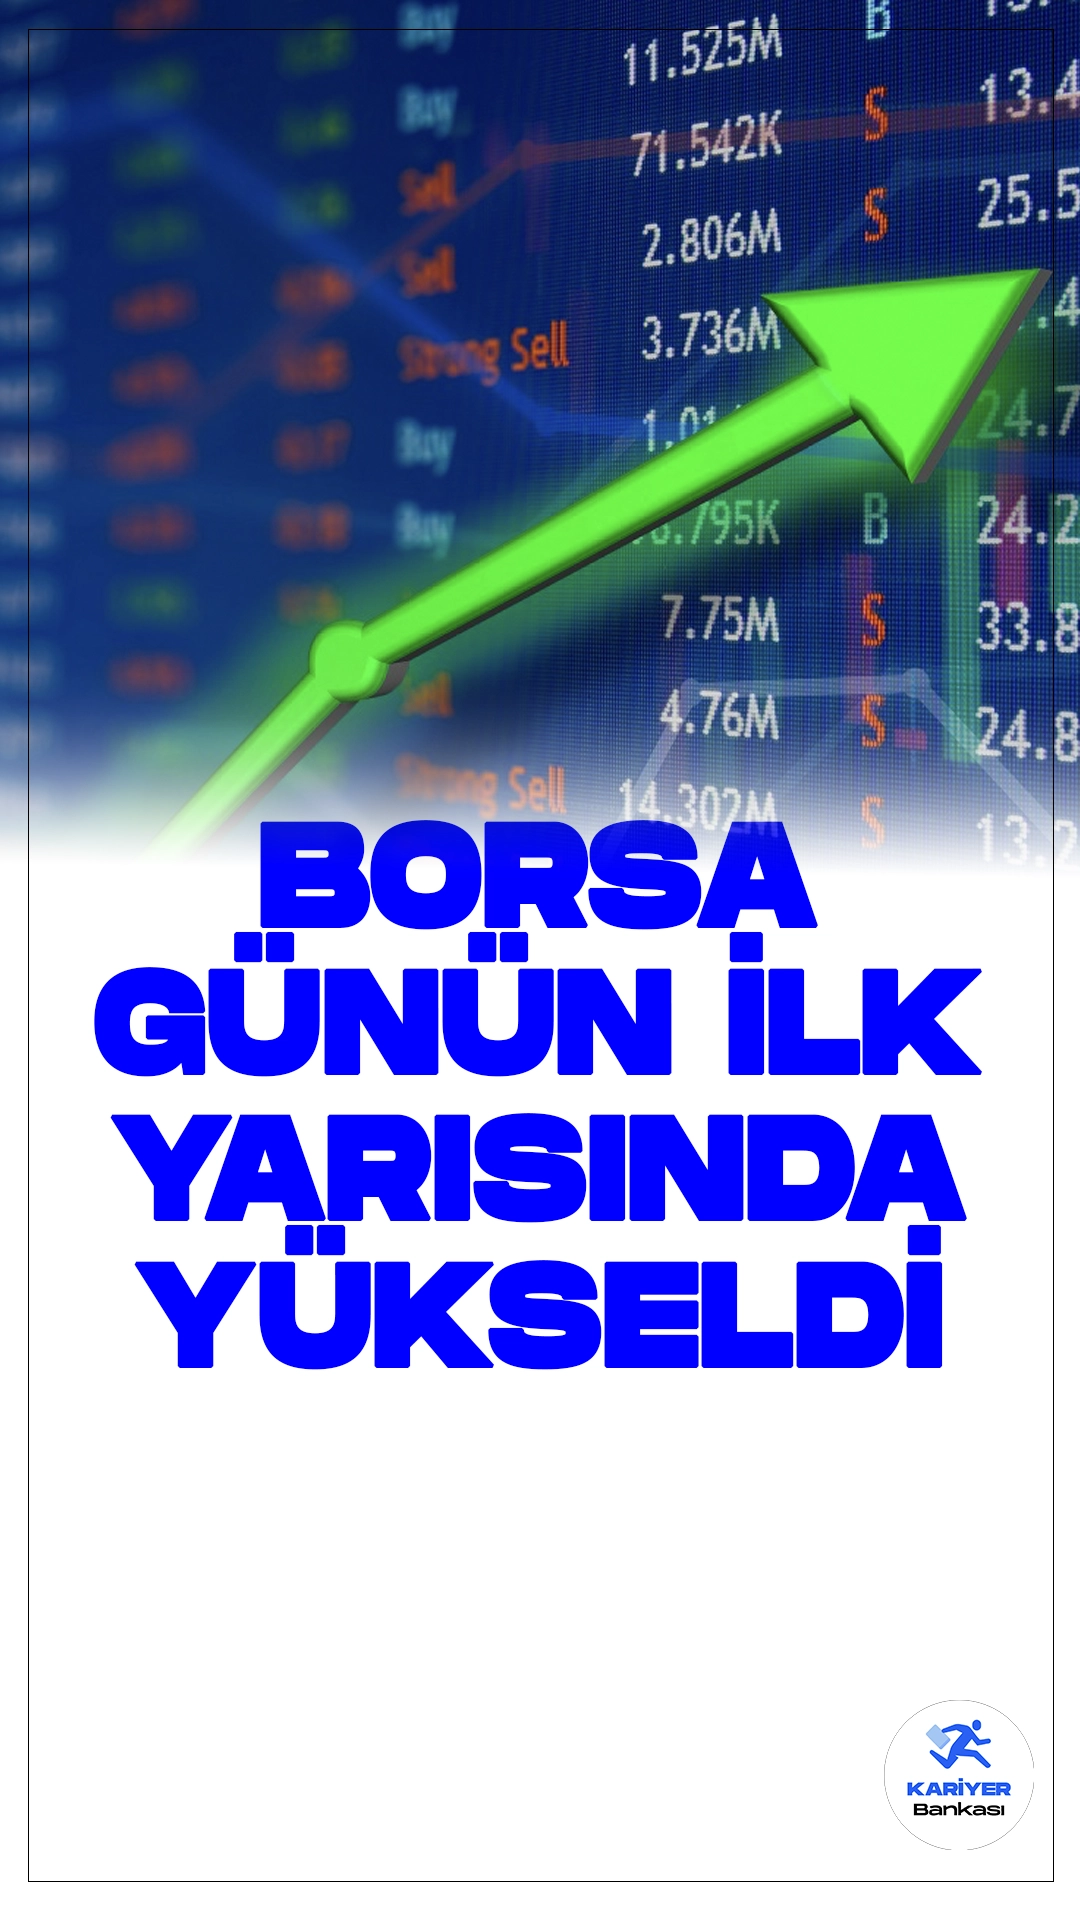 Borsa İstanbul'da Yükseliş Devam Ediyor.Borsa İstanbul günün ilk yarısında yükseliş eğilimini sürdürdü. BIST 100 endeksi, %0,79 oranında değer kazanarak 9.770,42 puana çıktı.